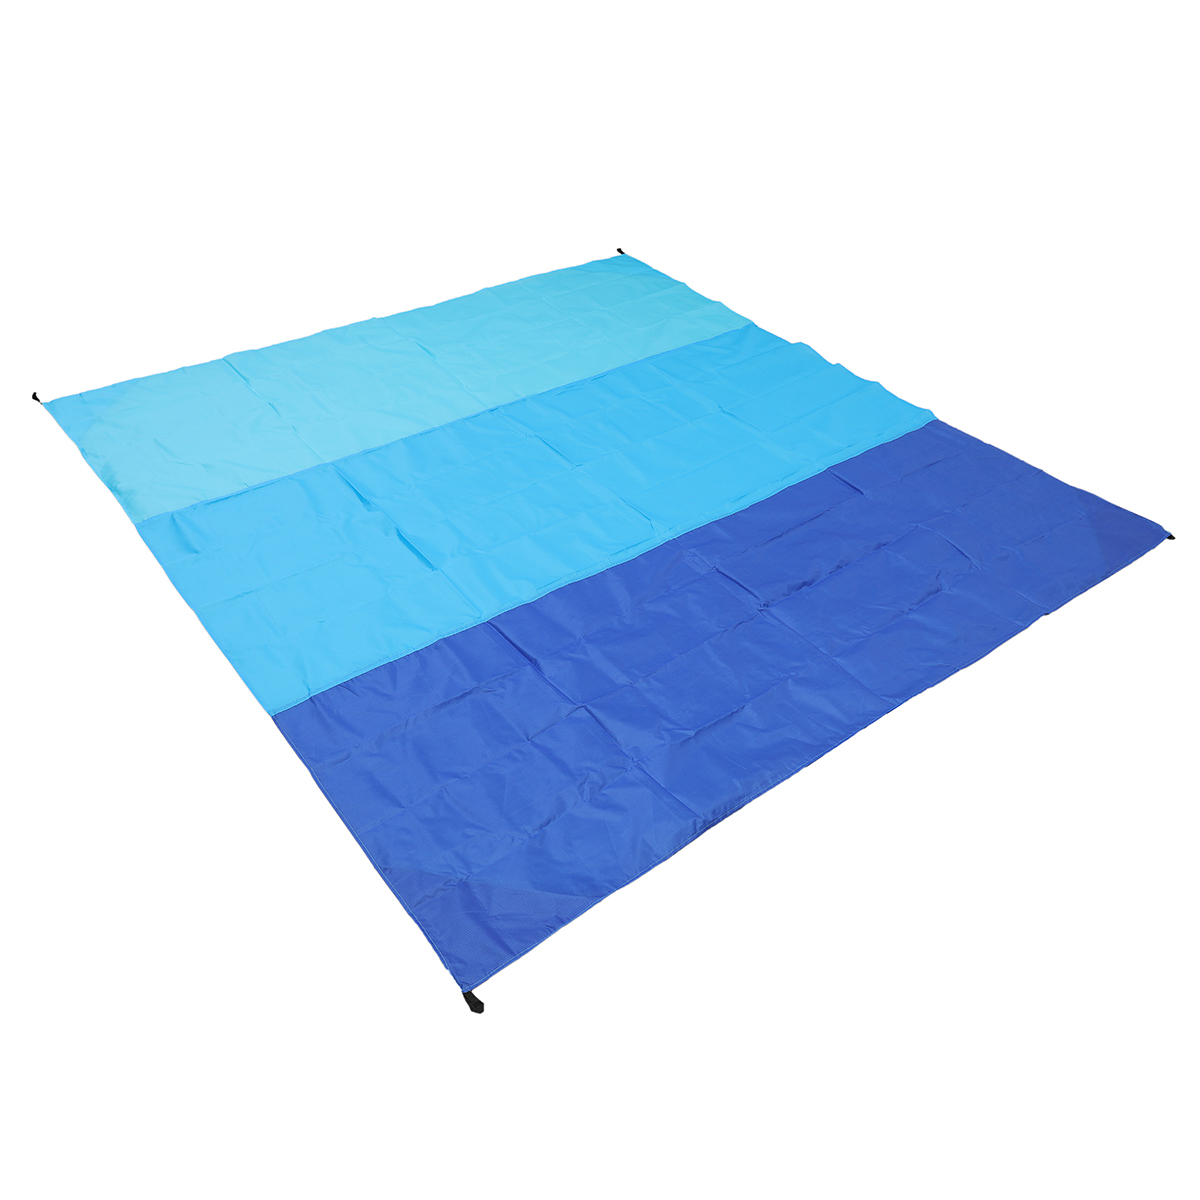 SGODDE-210x200cm-Picnic-Mat-Sand-proof-Waterproof-Beach-Blanket-Lightweight-Folding-Camping-Travel-1878570-3